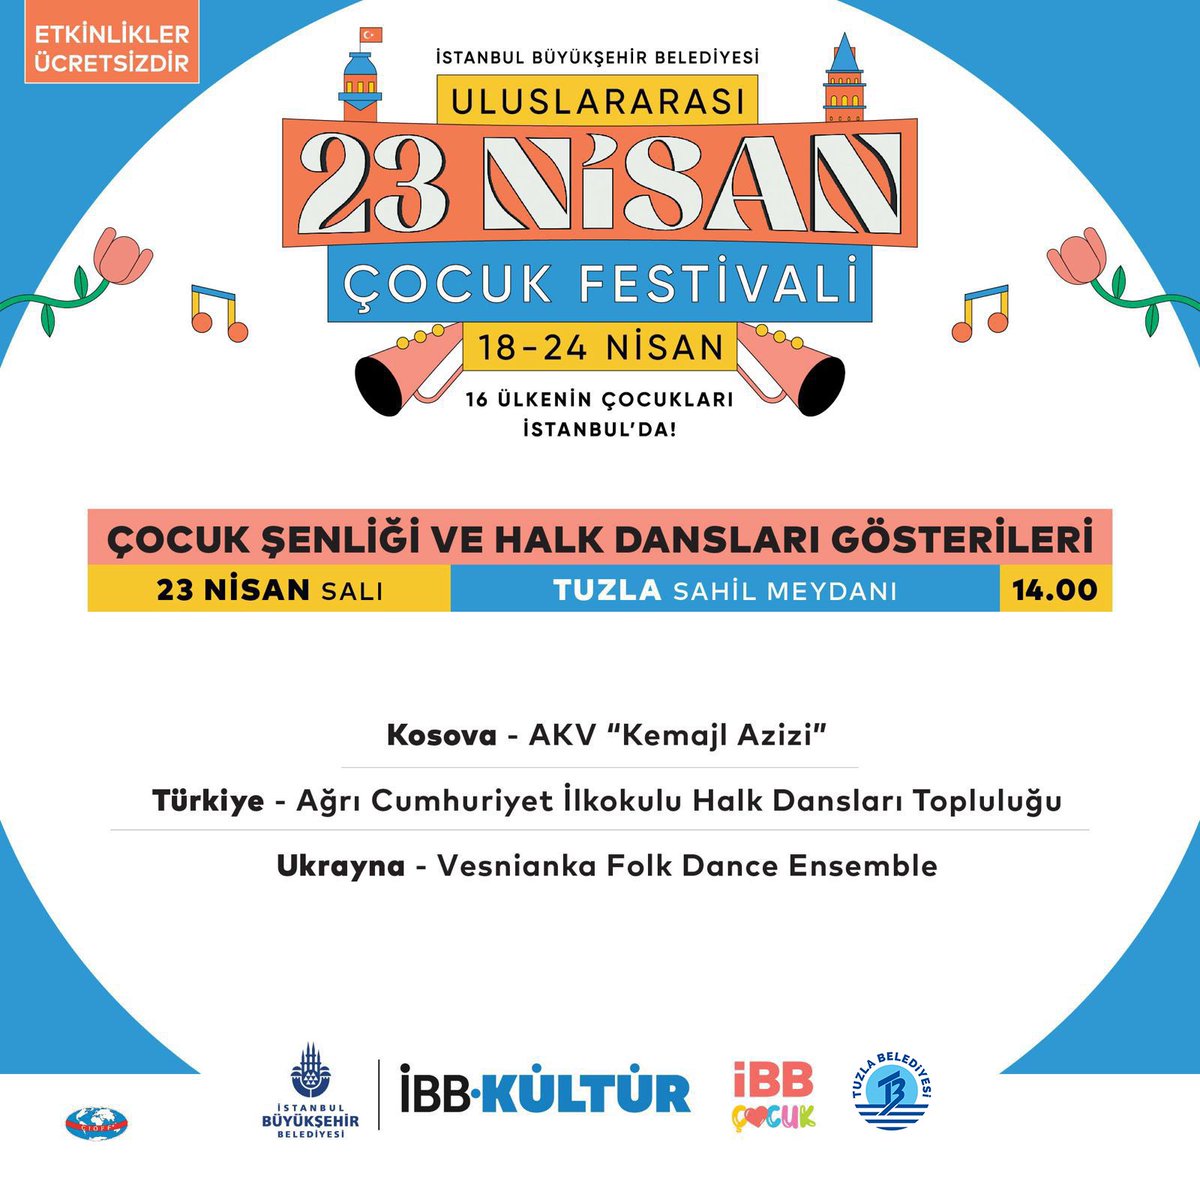 23 Nisan Ulusal Egemenlik ve Çocuk Bayramı’nı, Türk ve dünya çocuklarıyla İstanbul’un dört bir yanında gerçekleştireceğimiz Uluslararası 23 Nisan Çocuk Festivali ile coşkuyla kutluyoruz! 🎉👧 Tuzla’yı da şenlendirecek, dünya çocuklarının katılımıyla dolu dolu bir festival